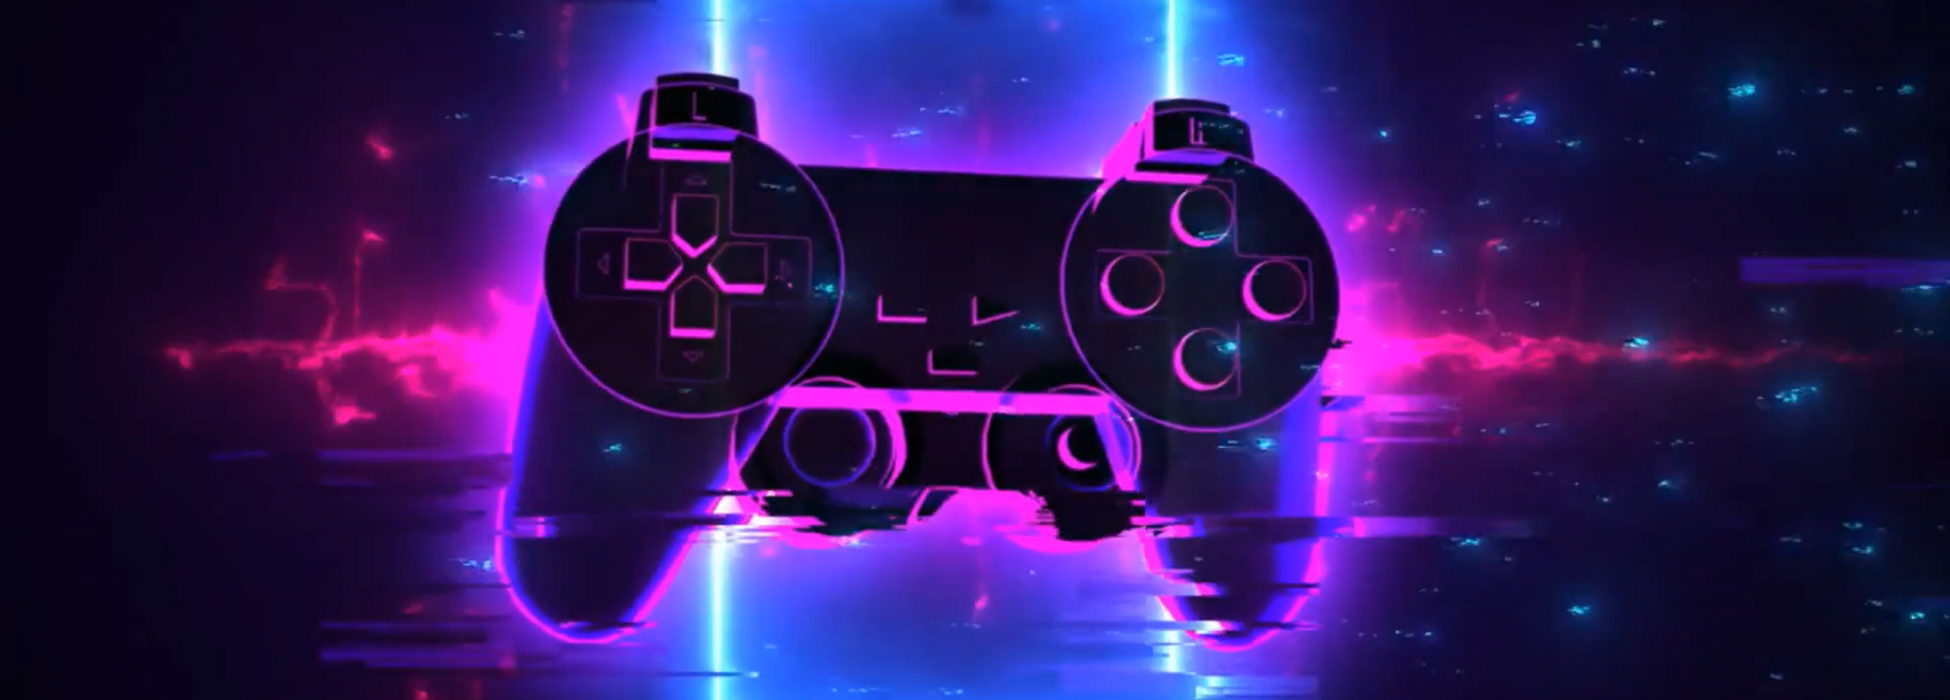 Hologramm eines lila umrandeten Gaming-Controllers vor einem dunklen Hintergrund